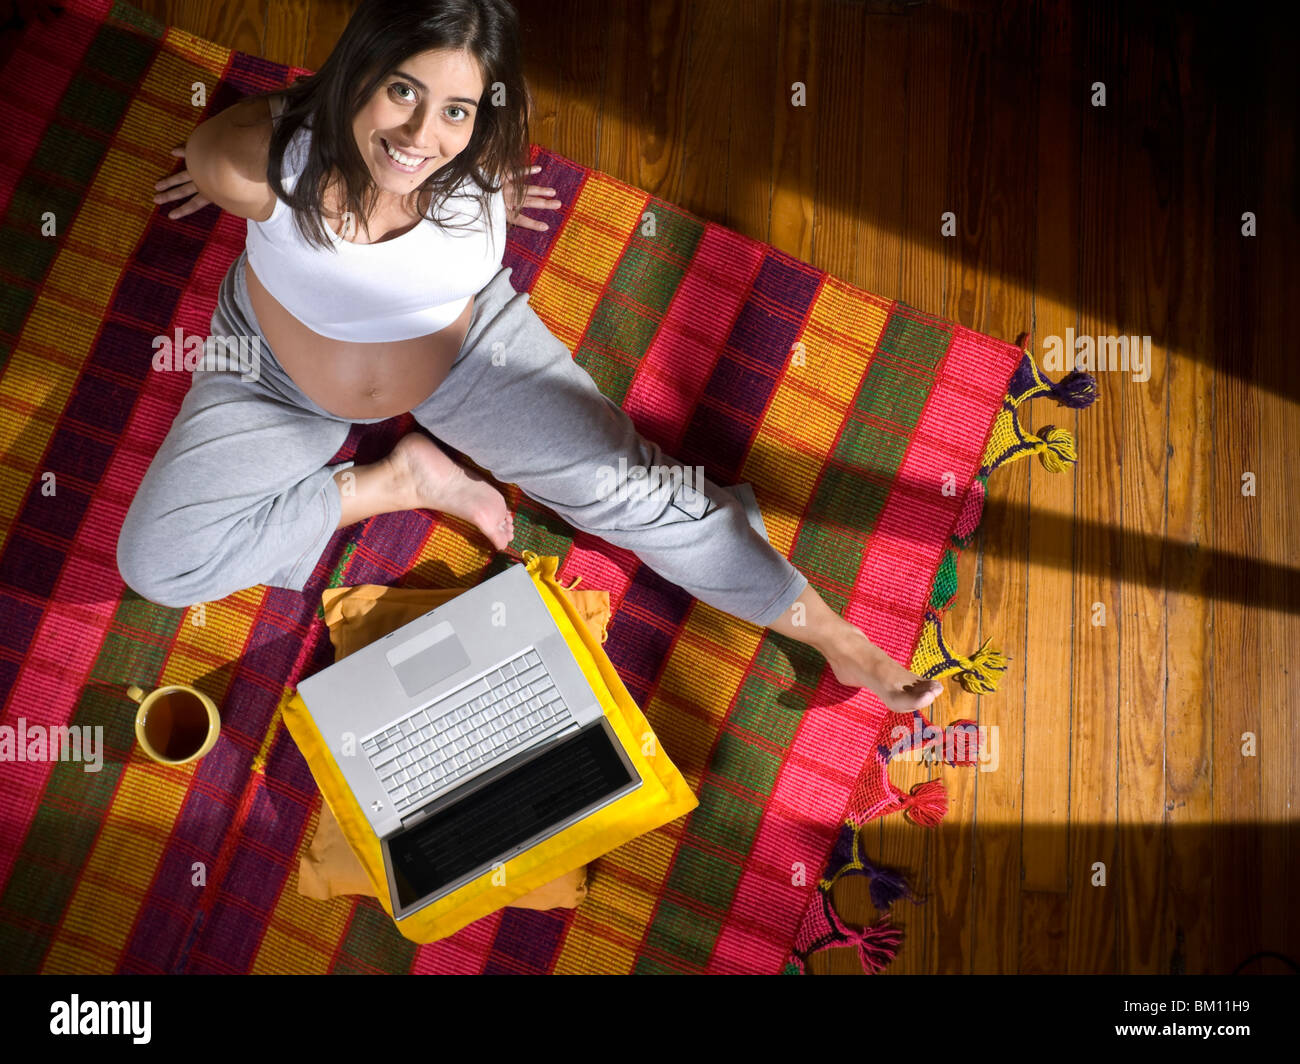 Vue de dessus d'une jeune femme enceinte assis sur un tapis coloré avec un ordinateur portable et d'une tasse de thé. Banque D'Images